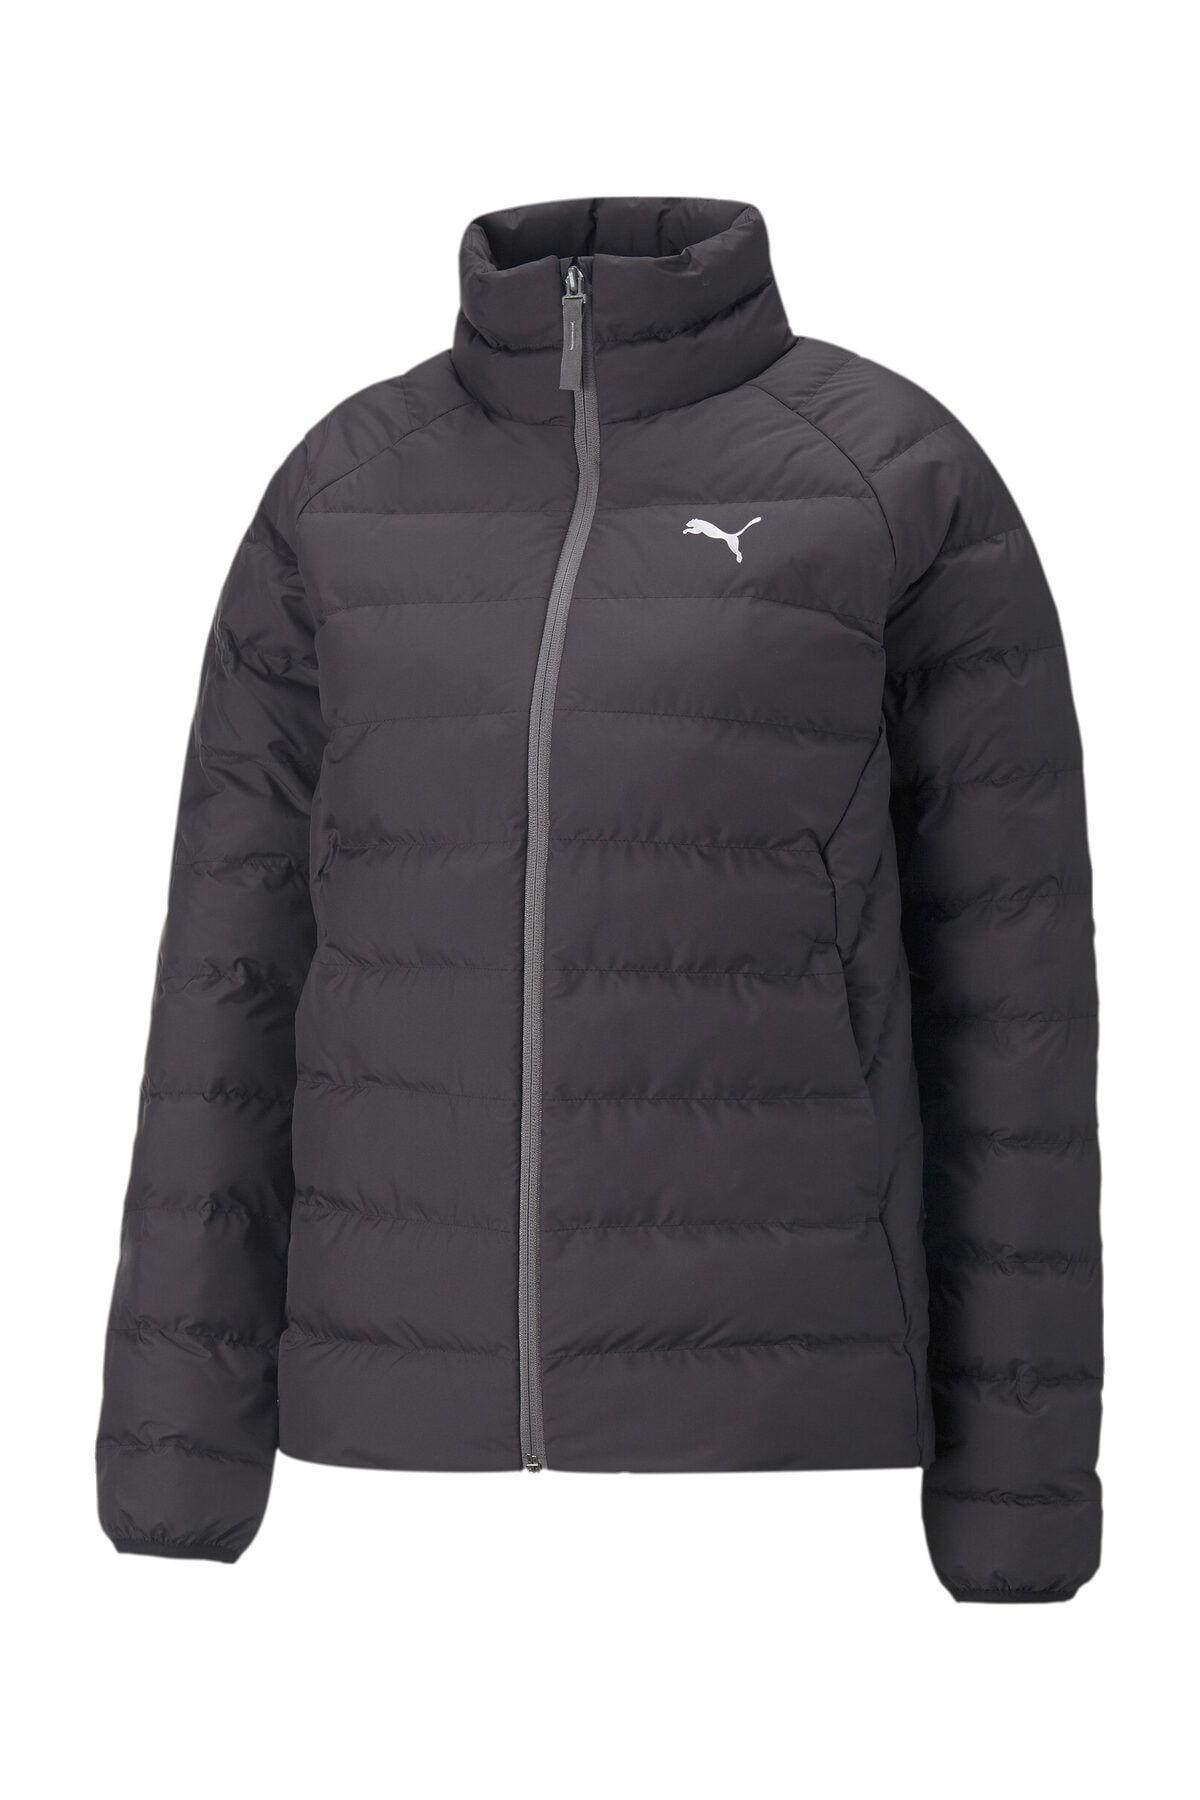 Puma Active Polyball Jacket Black Sports Trendyol Coat-Jacket - 